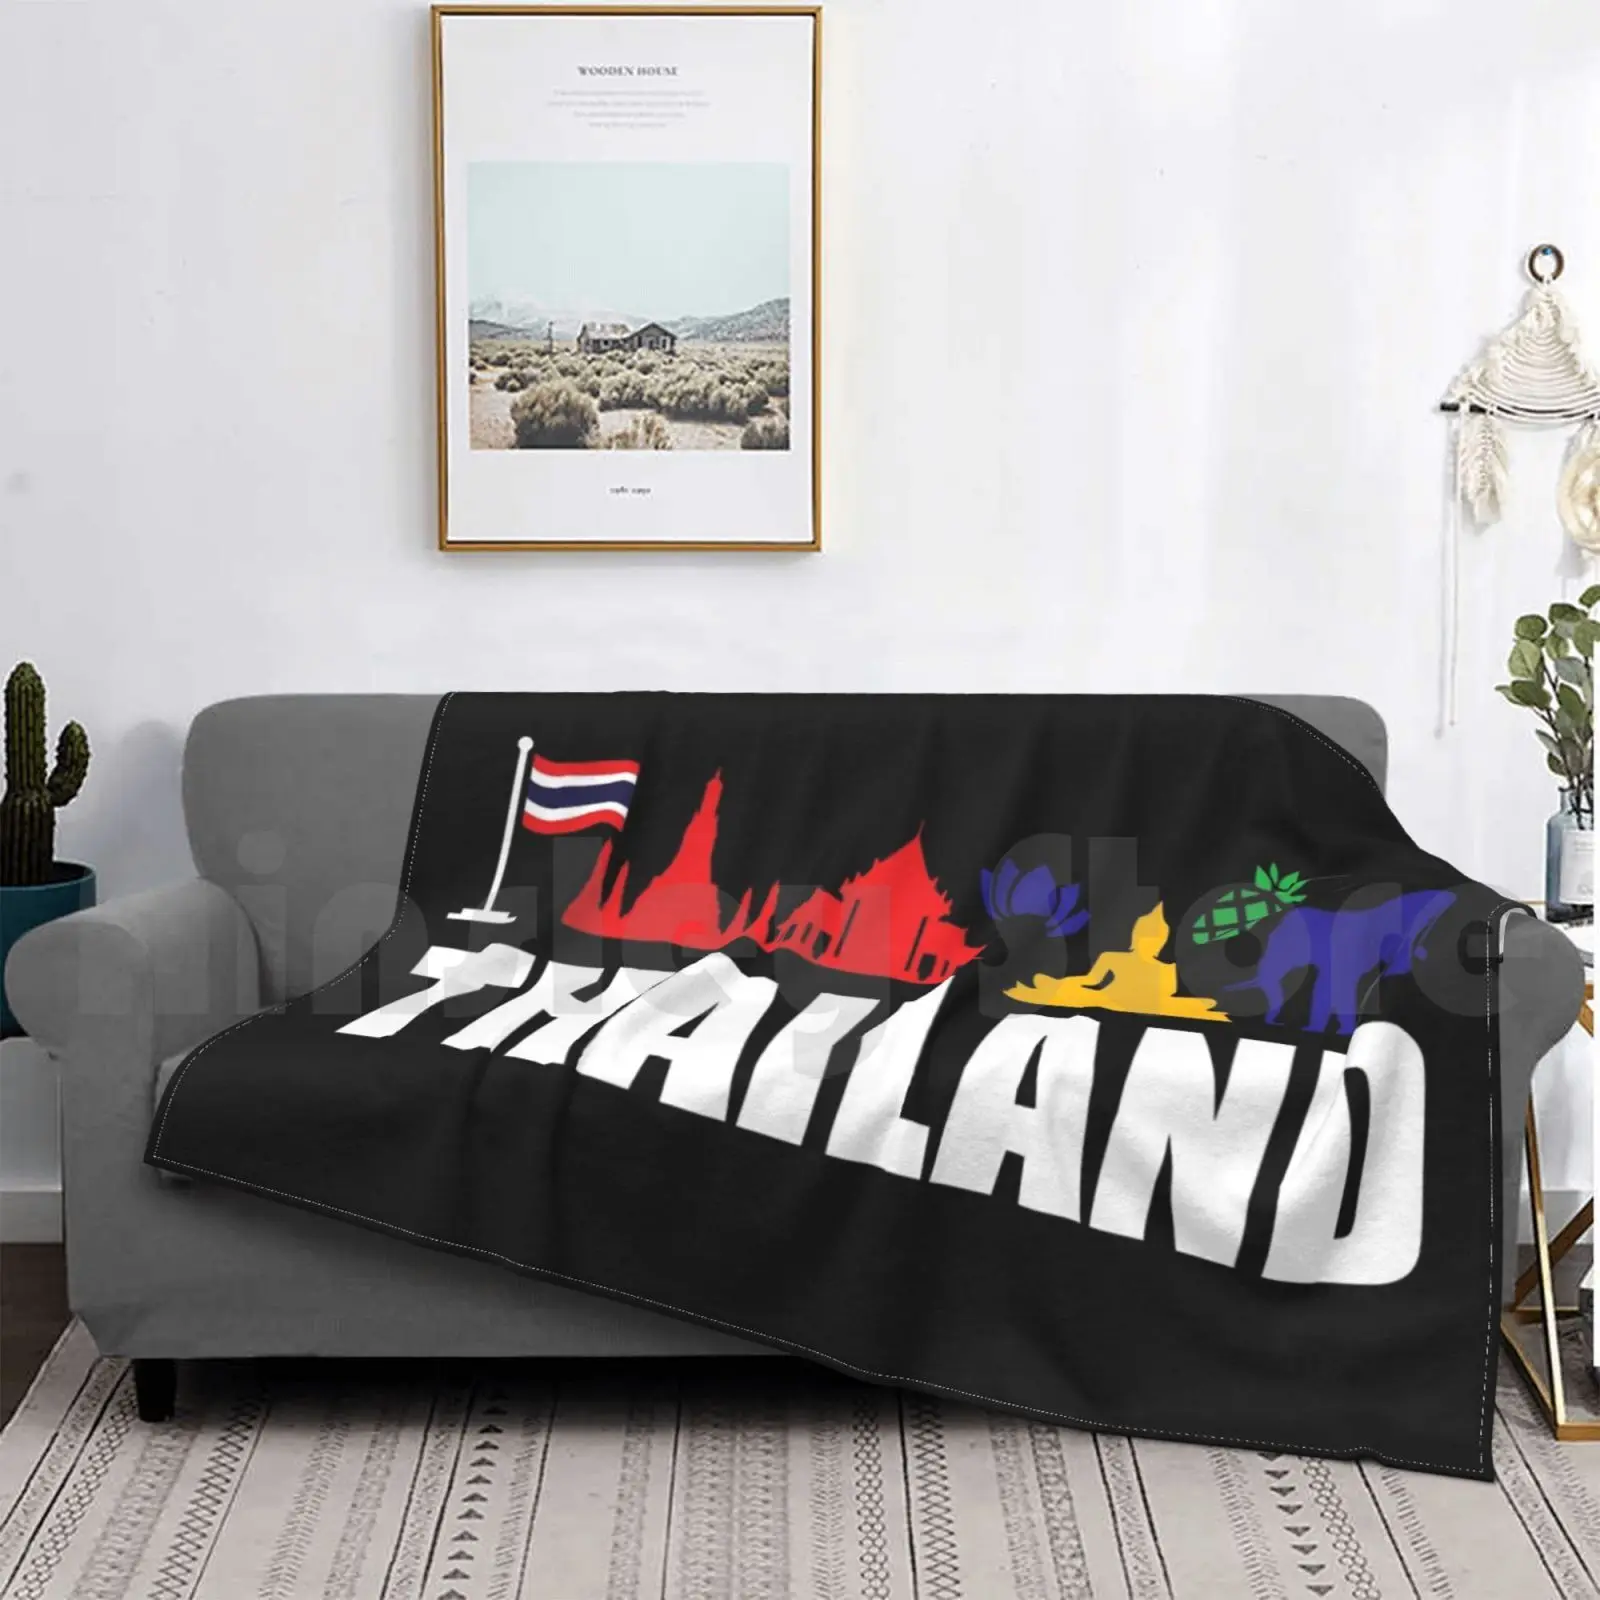 

Thailand Icons Tourist Souvenir Funny Gift Idea Blanket For Sofa Bed Travel Thailand Bangkok Thai Asia Travel